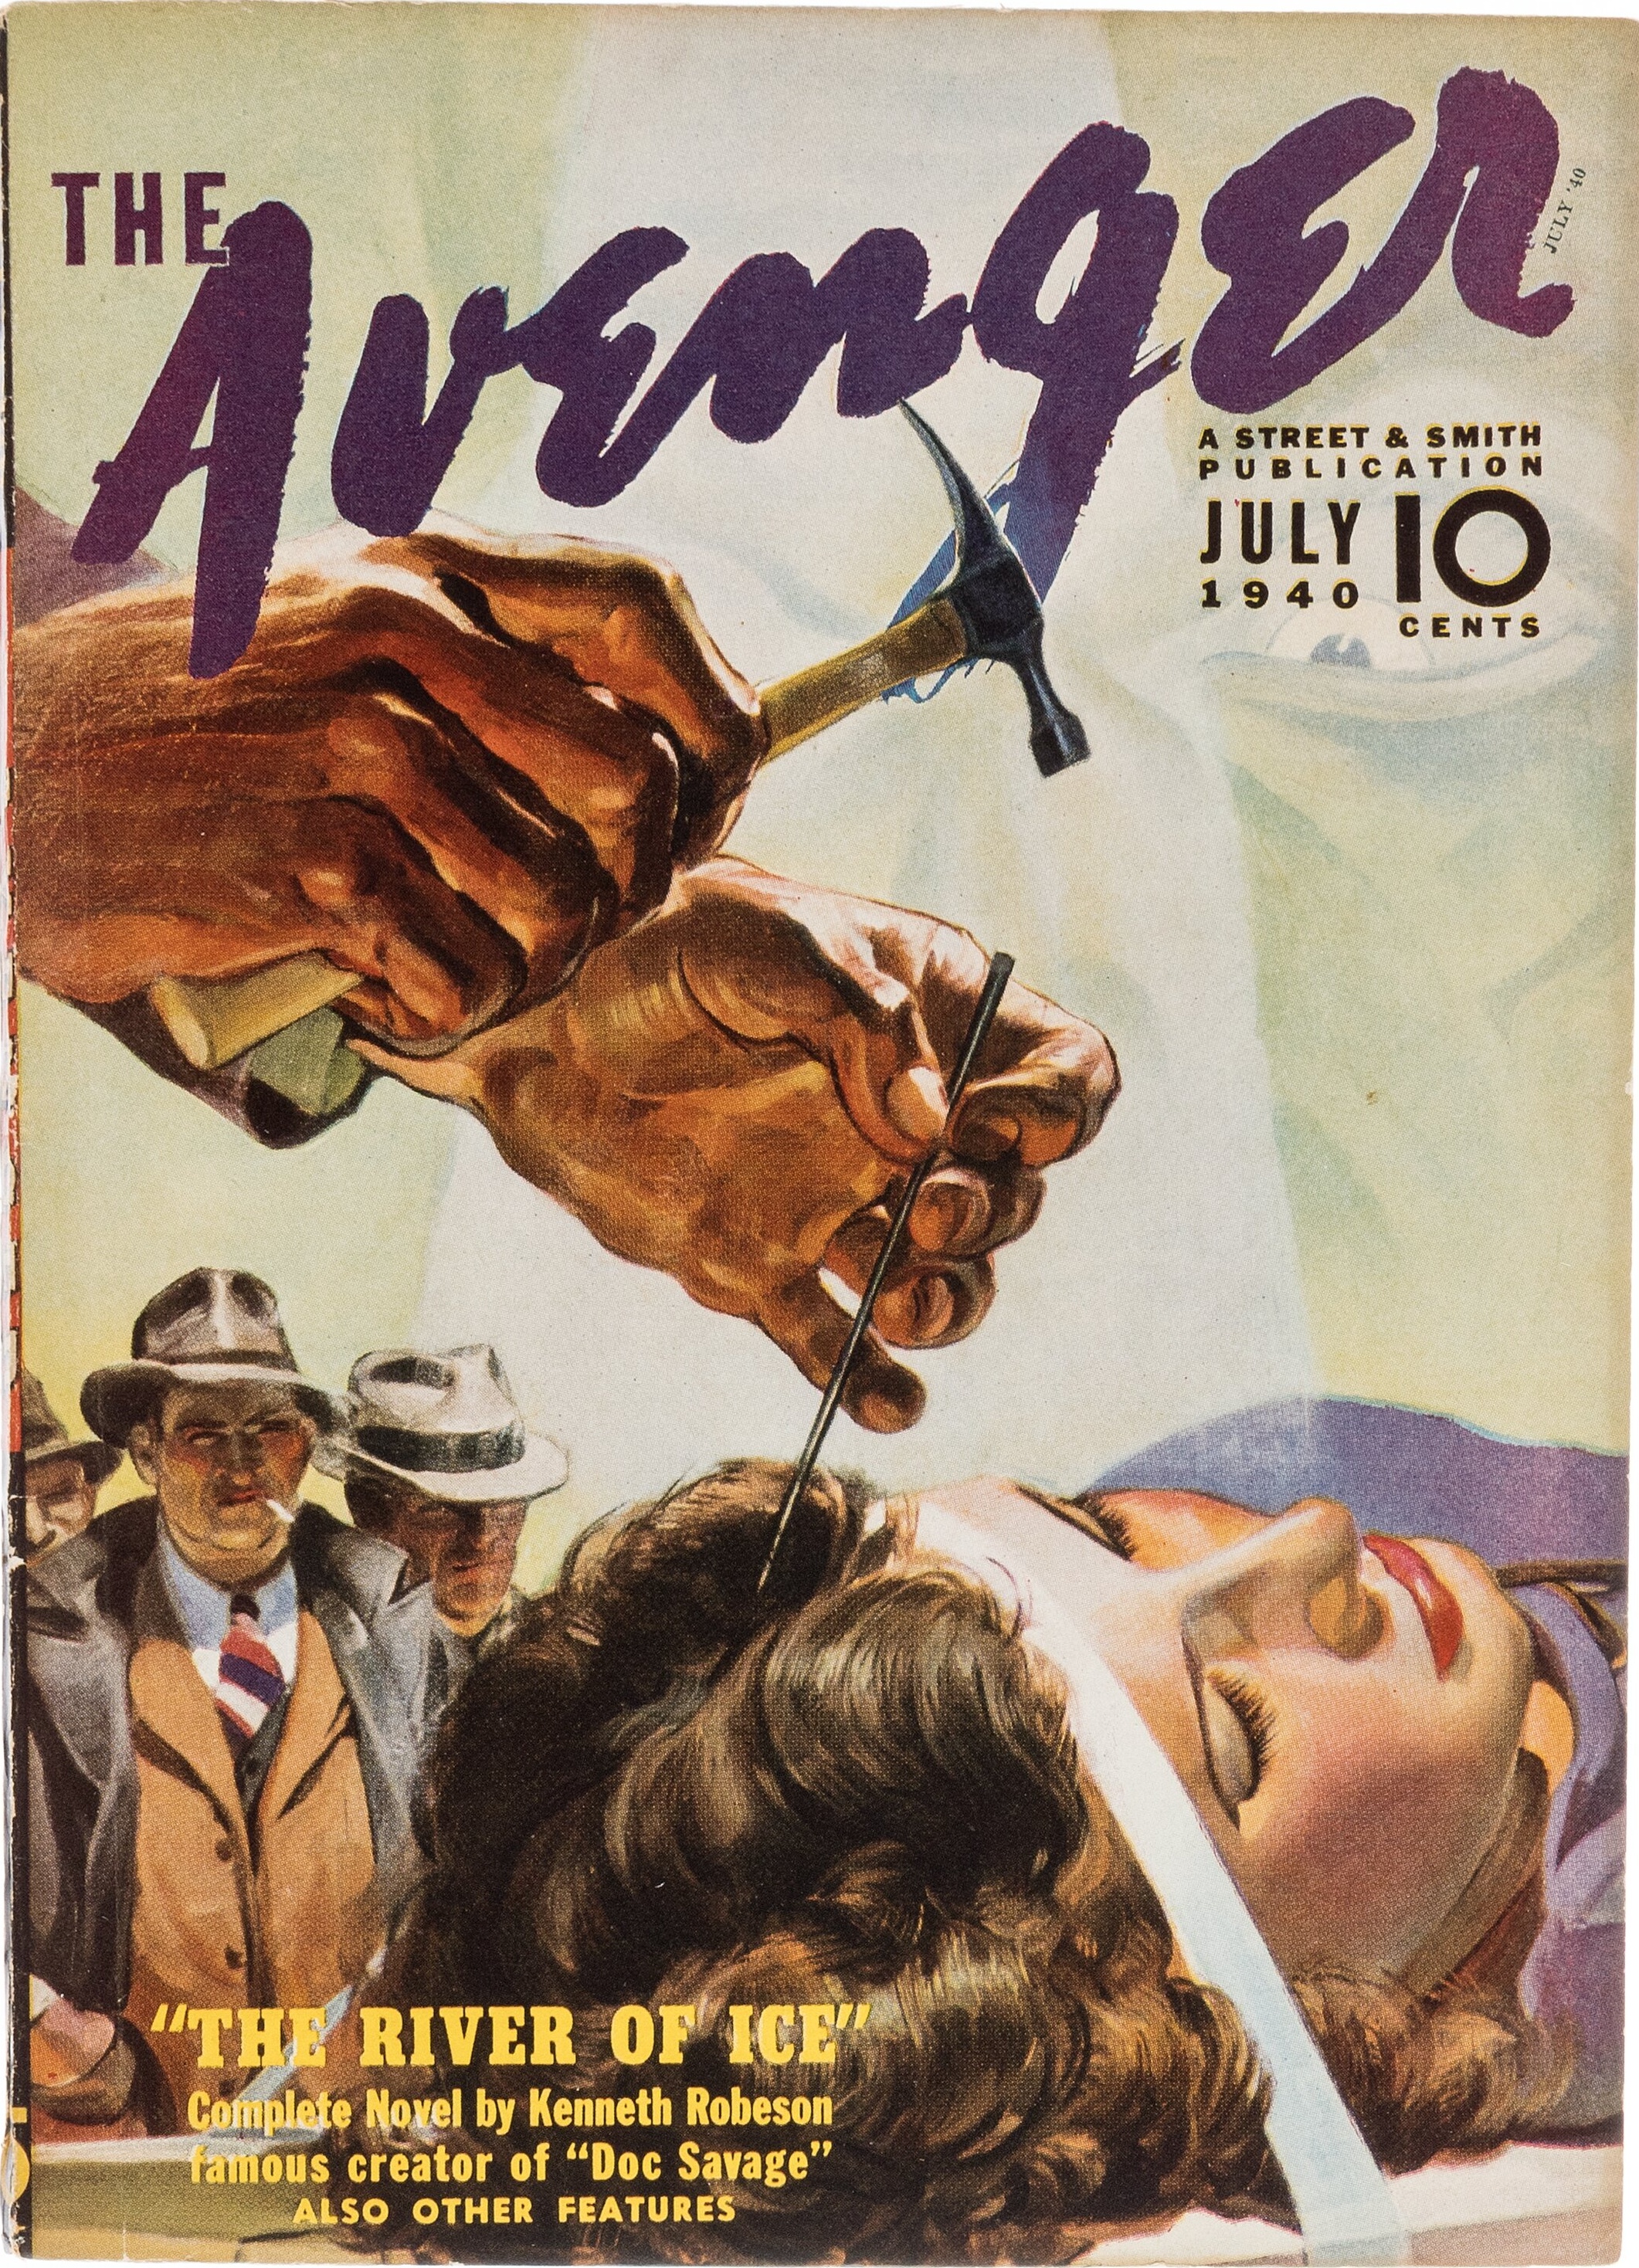 The Avenger - July 1940